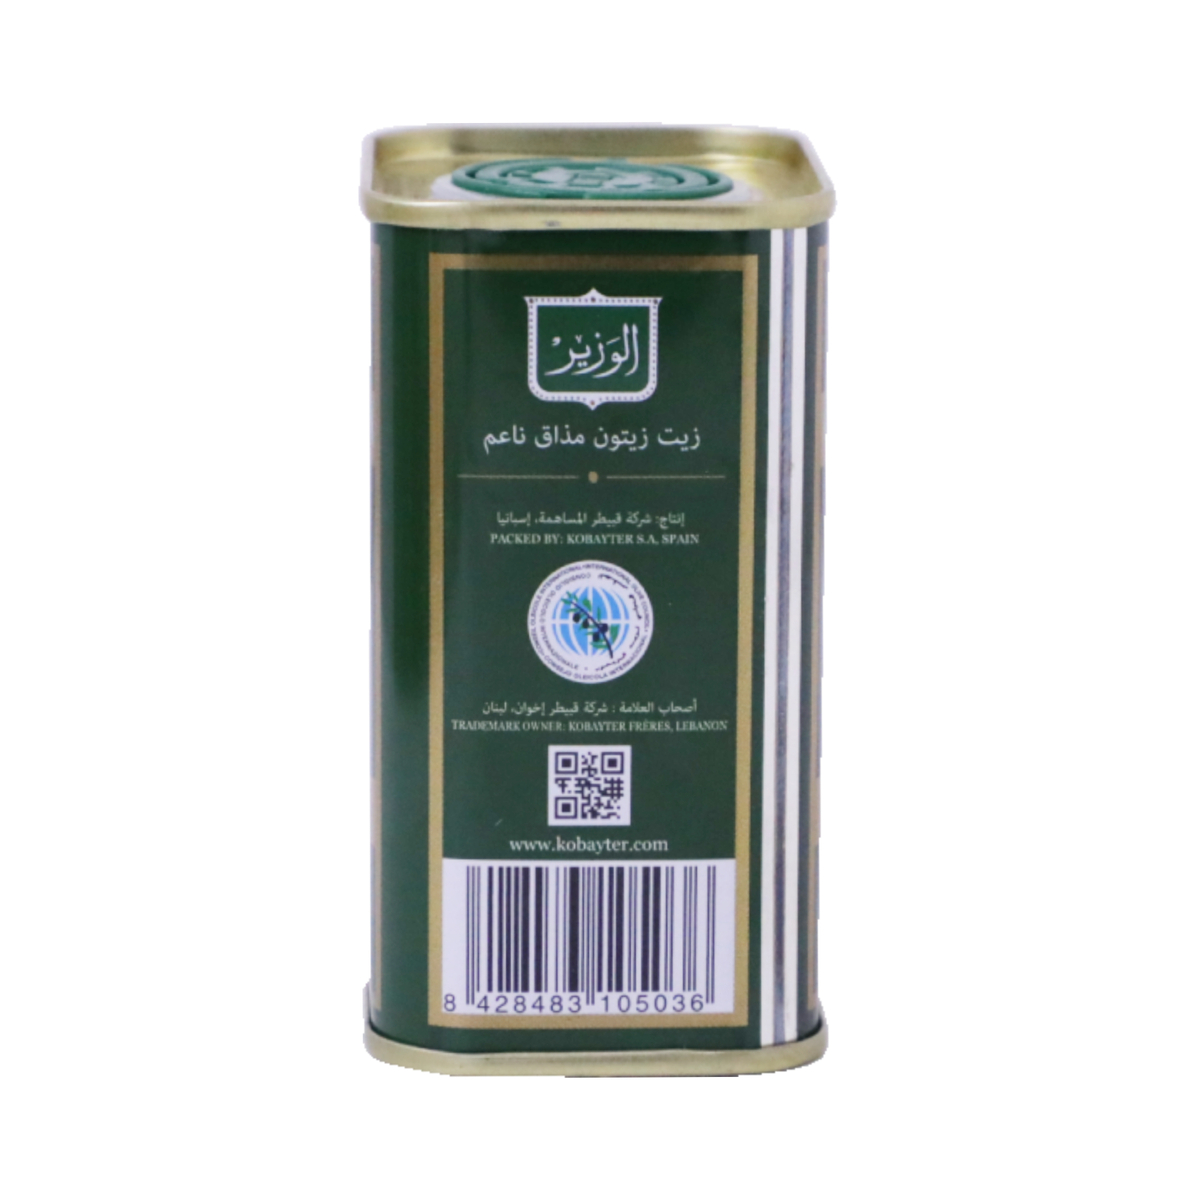 Al Wazir Virgin Olive Oil 175ml